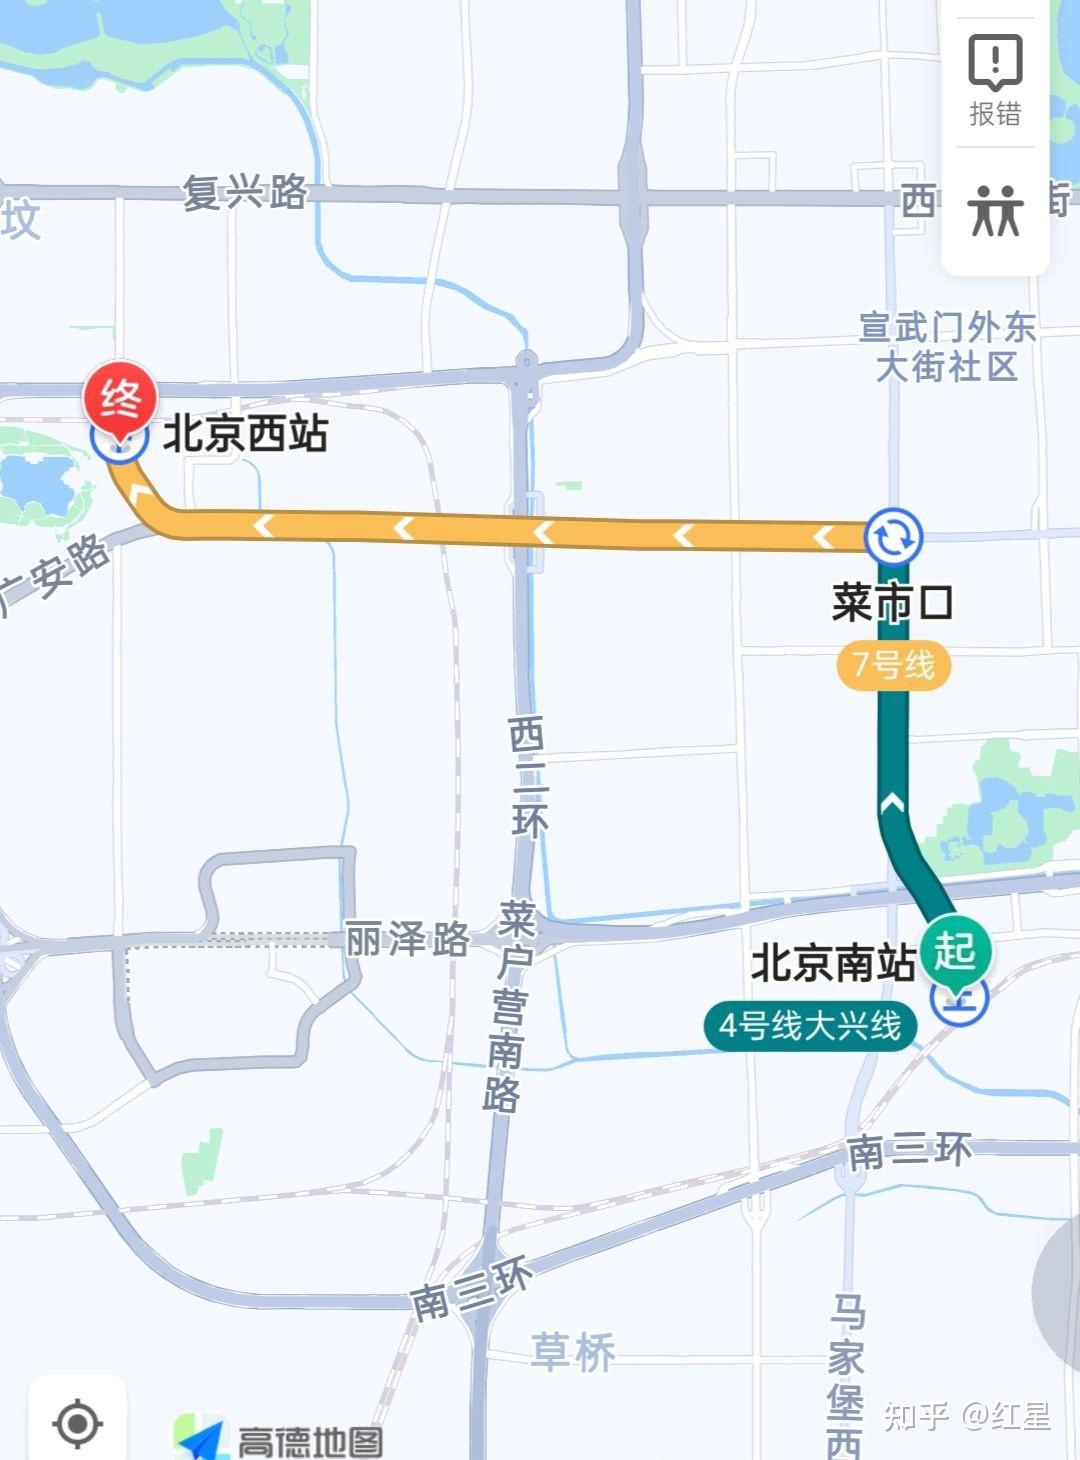 家人们,我有两种换乘(北京西站和北京南站)选择但是我不知道选哪一个?